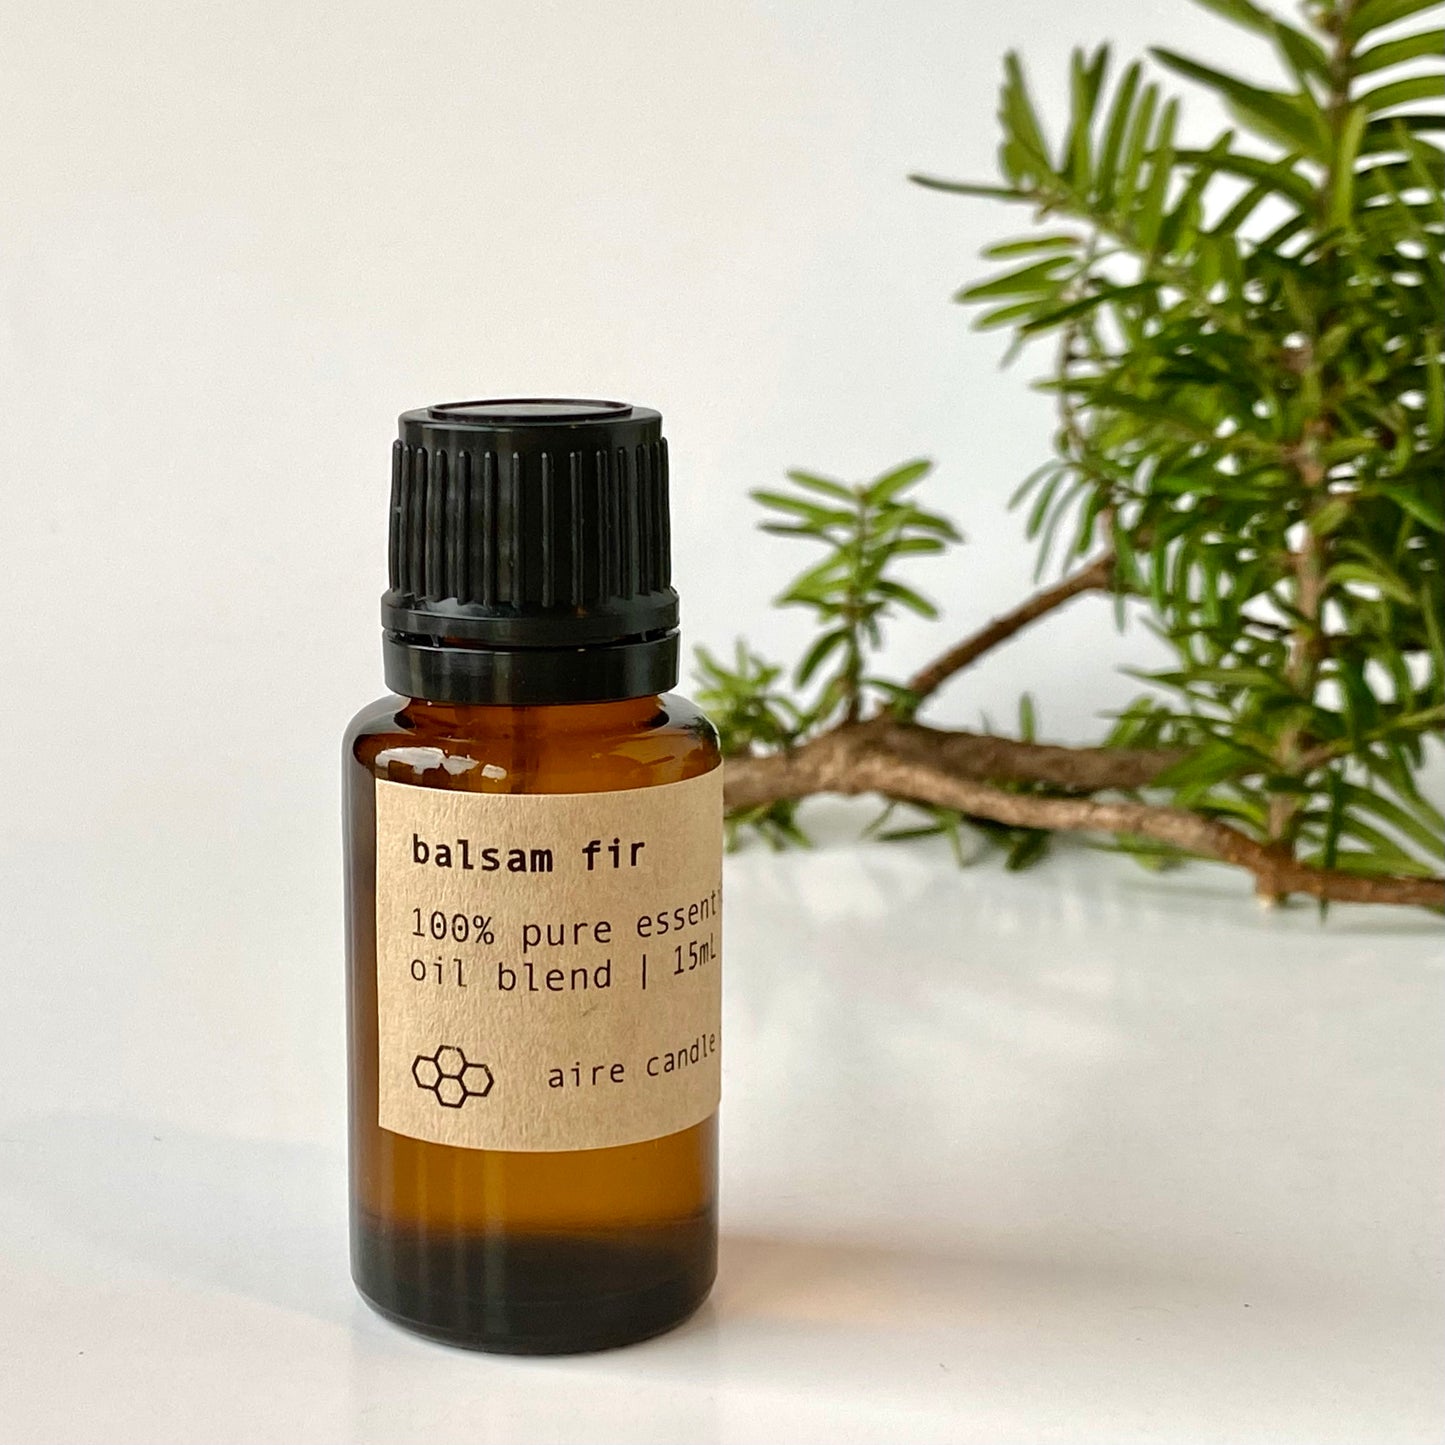 balsam fir essential oil